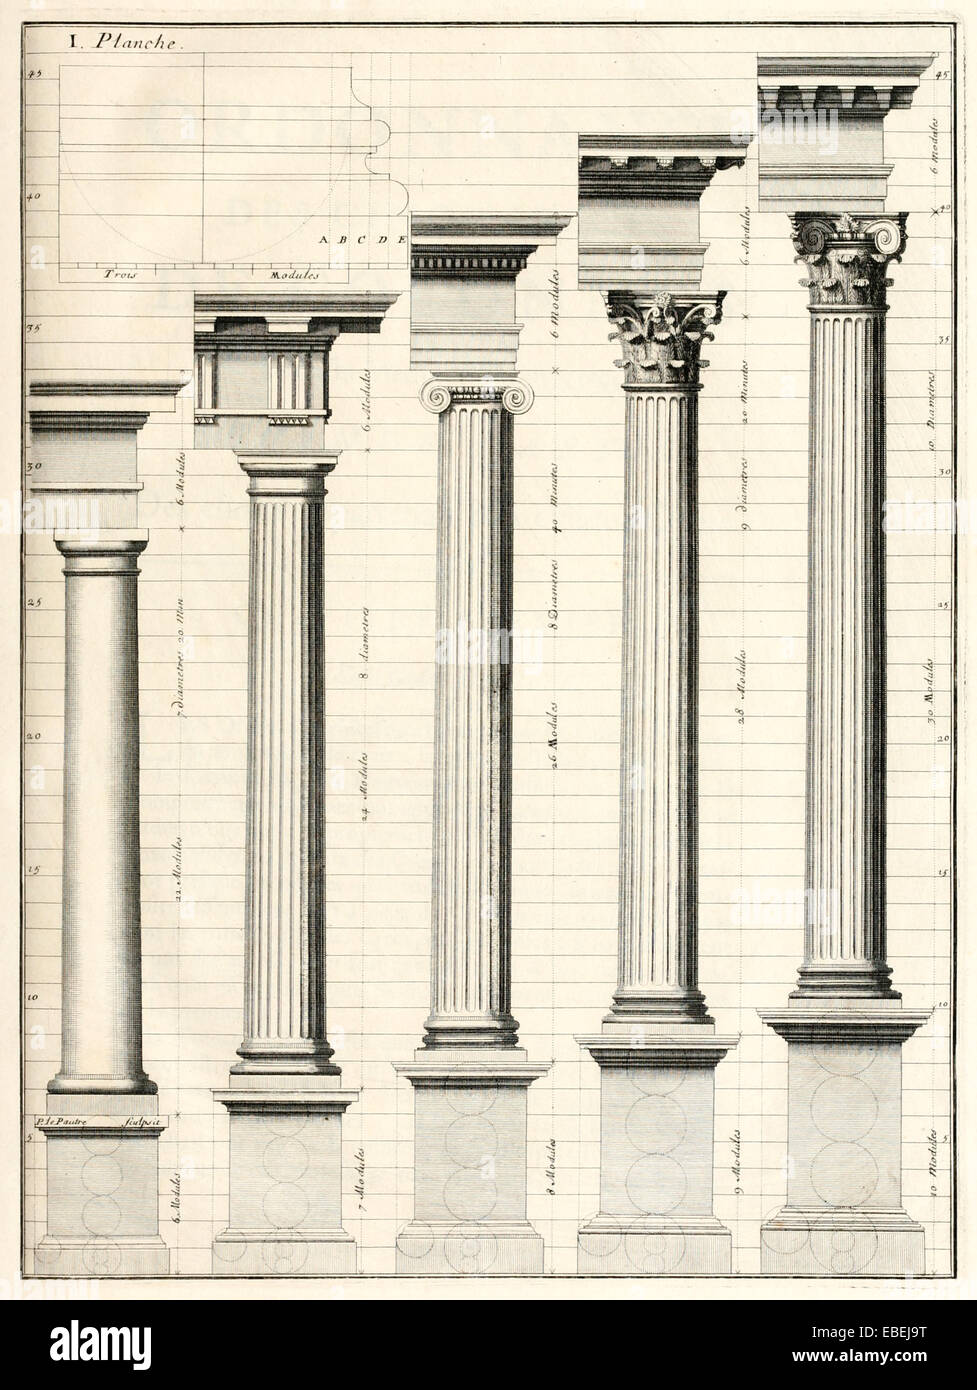 Ordine di classica di colonne di Claude Perrault, Francese architetto rinascimentale illustrazione. Vedere la descrizione per maggiori informazioni. Foto Stock